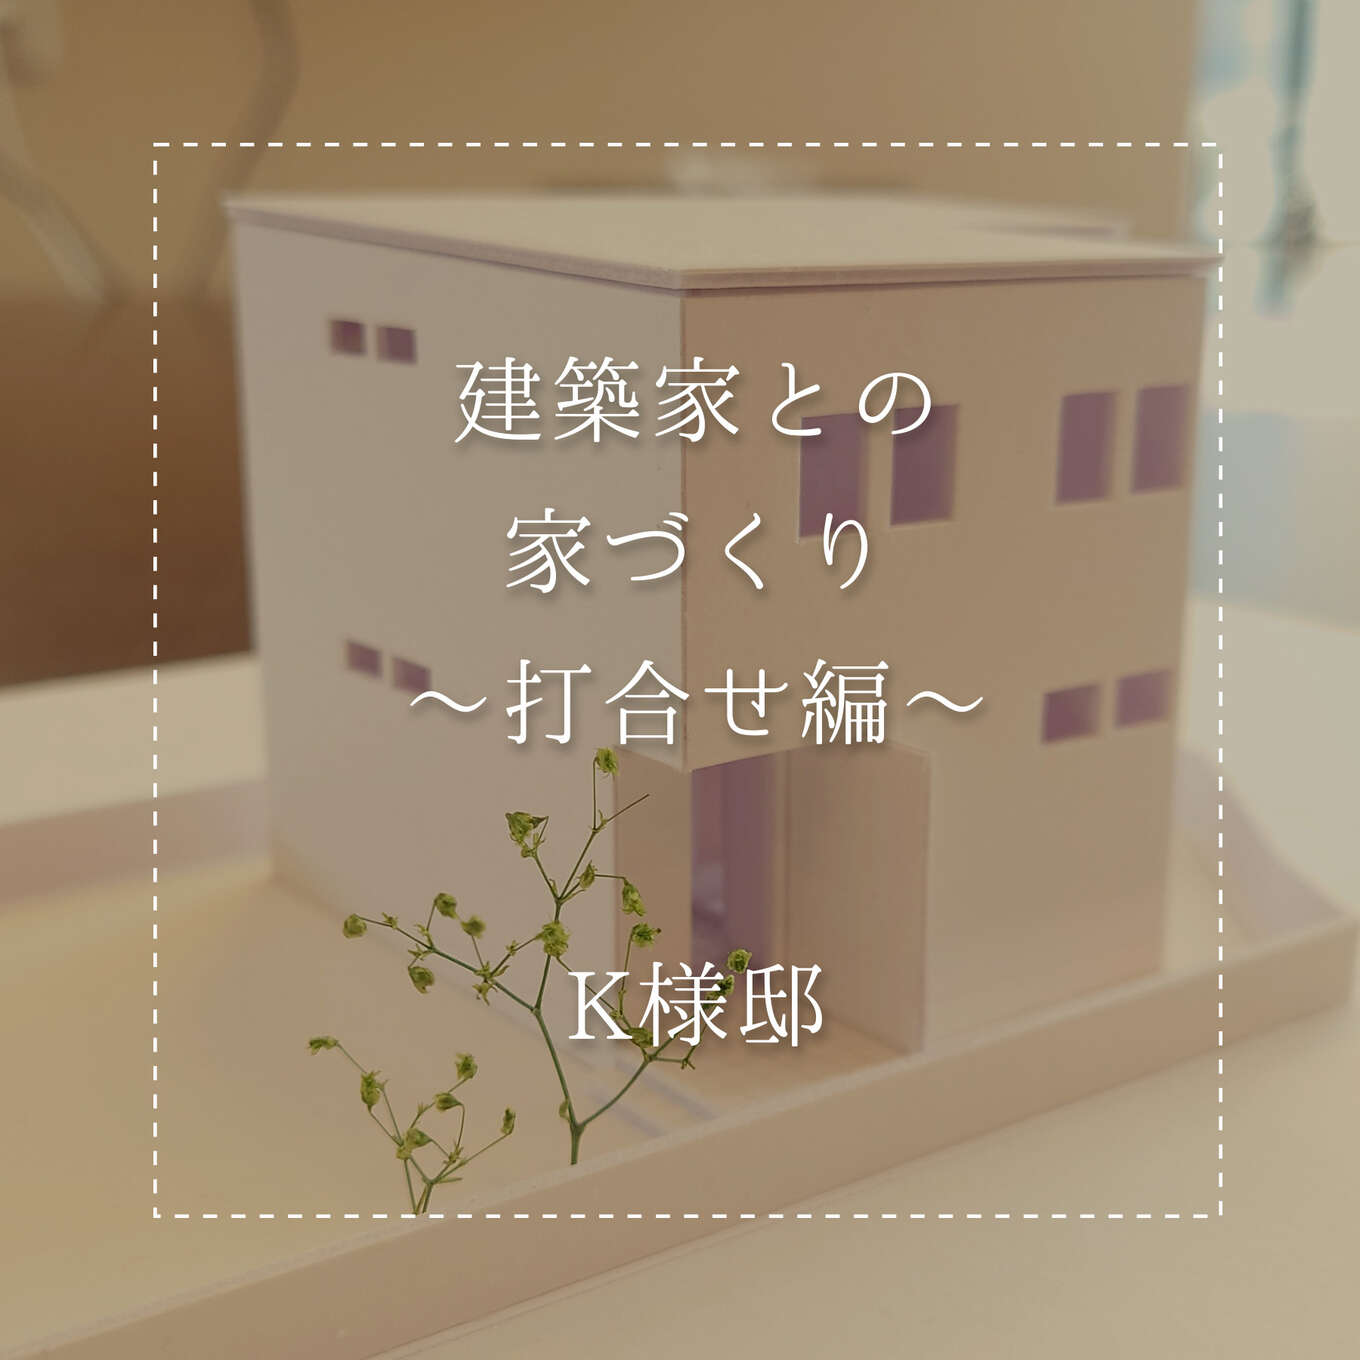 住宅模型を映した写真です。R+house飛騨で新築物件を建てるK様のお家模型です。